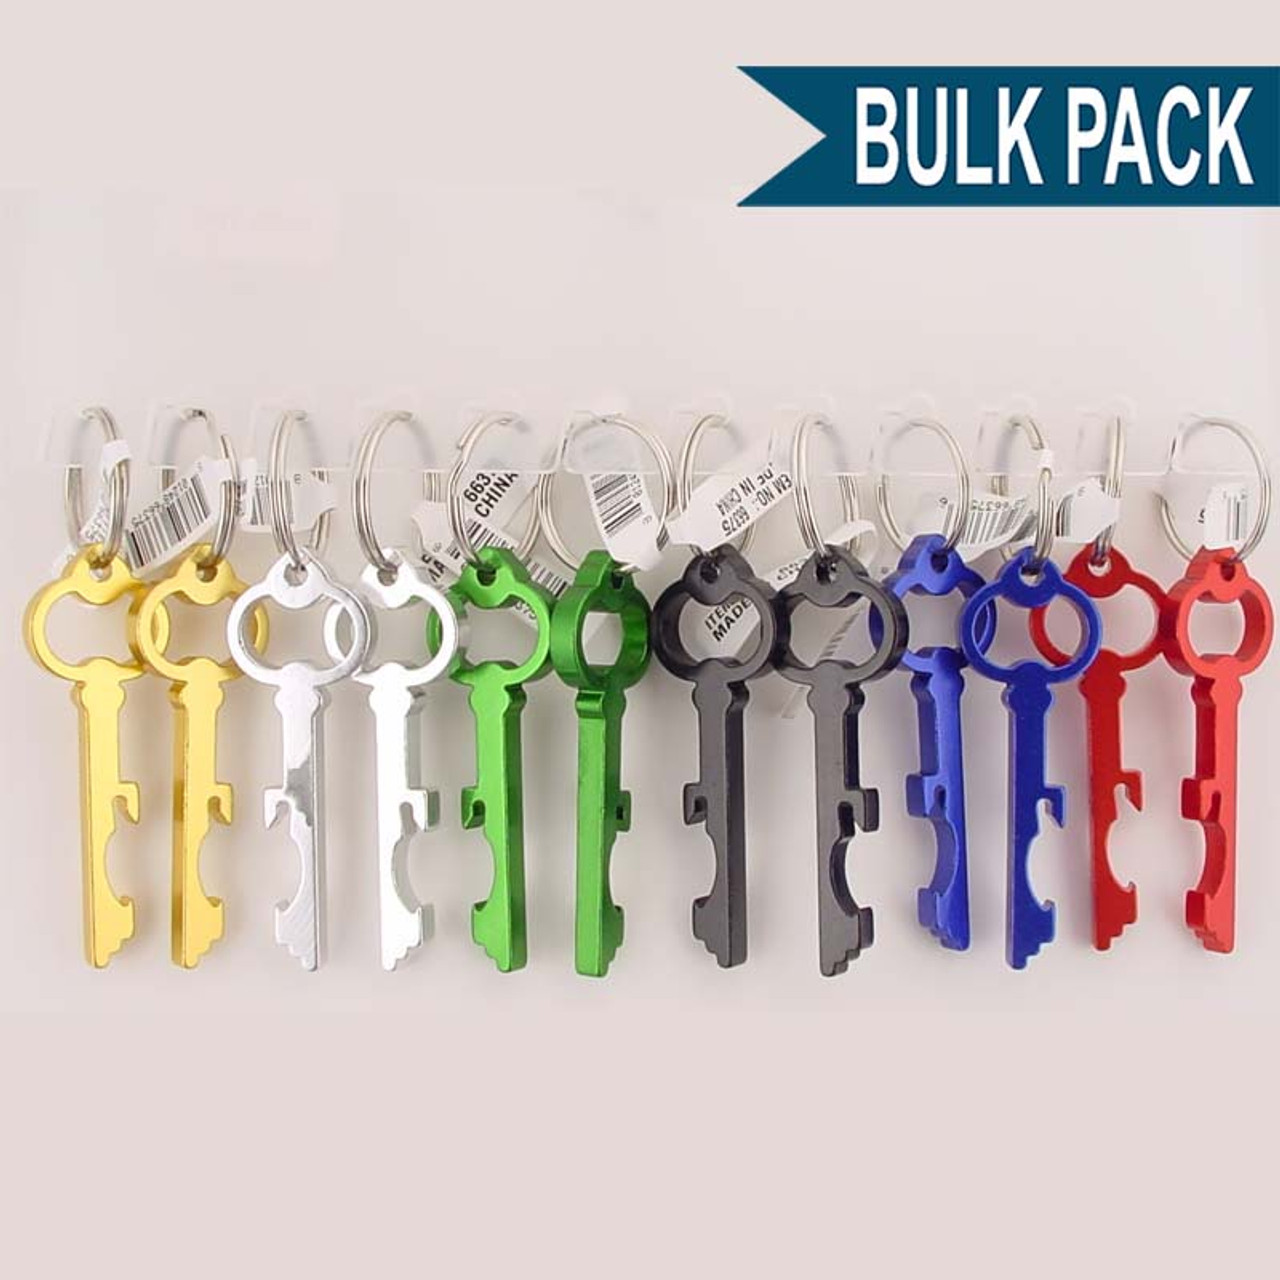 Bulk Pack Key Chains